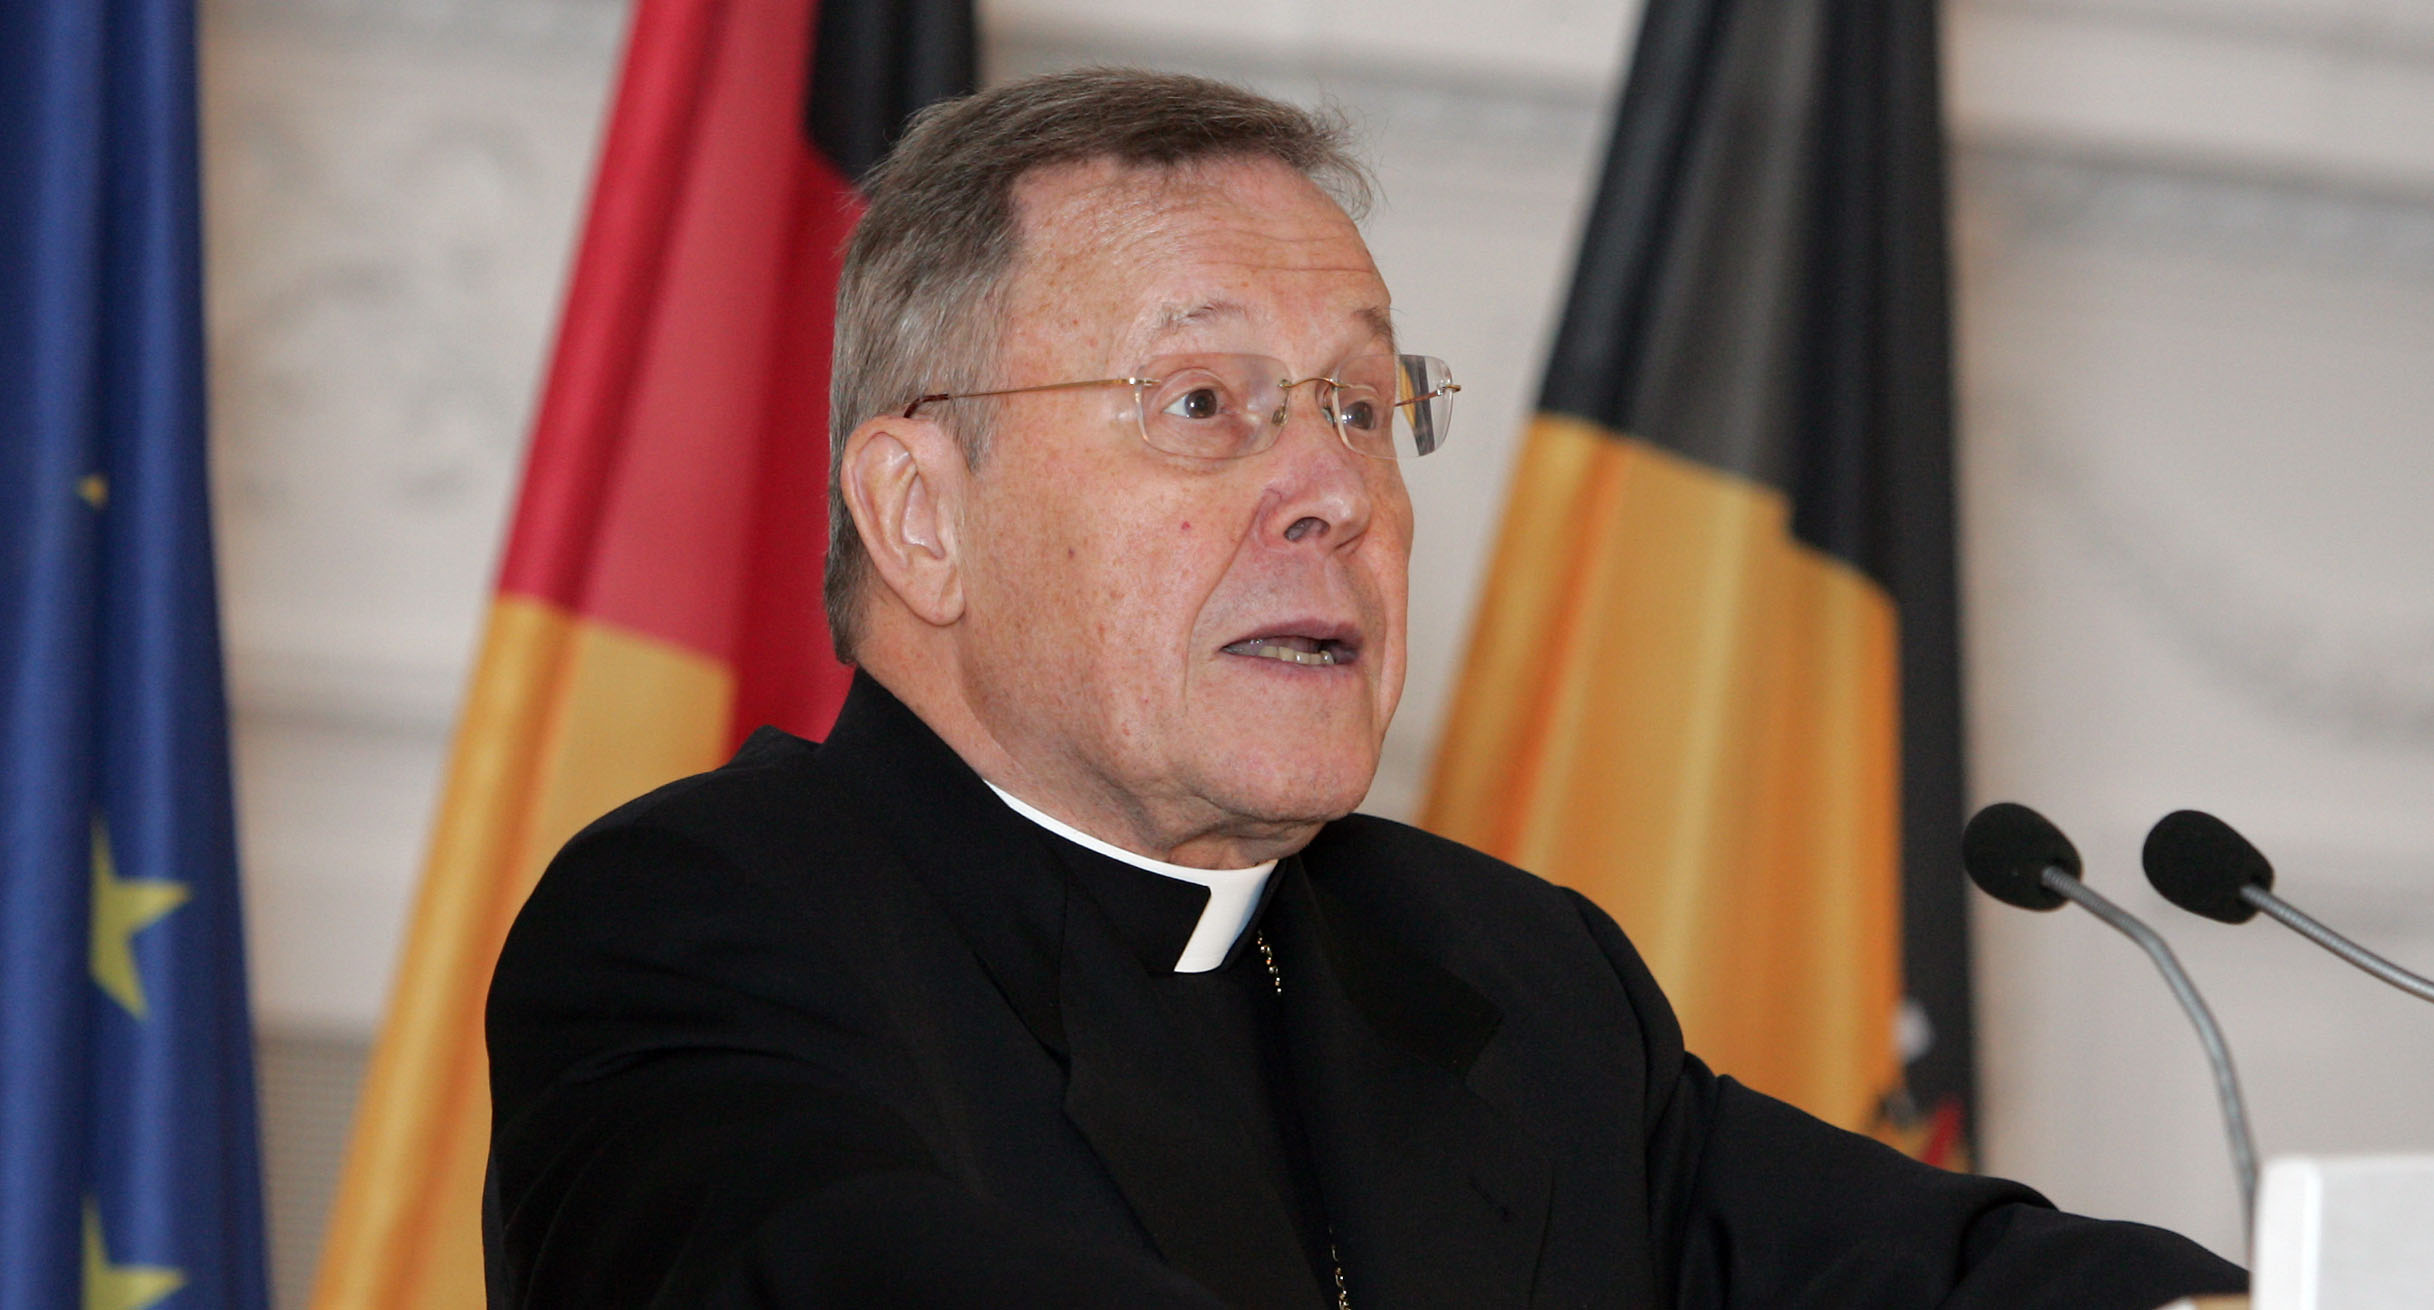 Kardinal Walter Kasper hält die Stuttgarter Rede zu Europa.